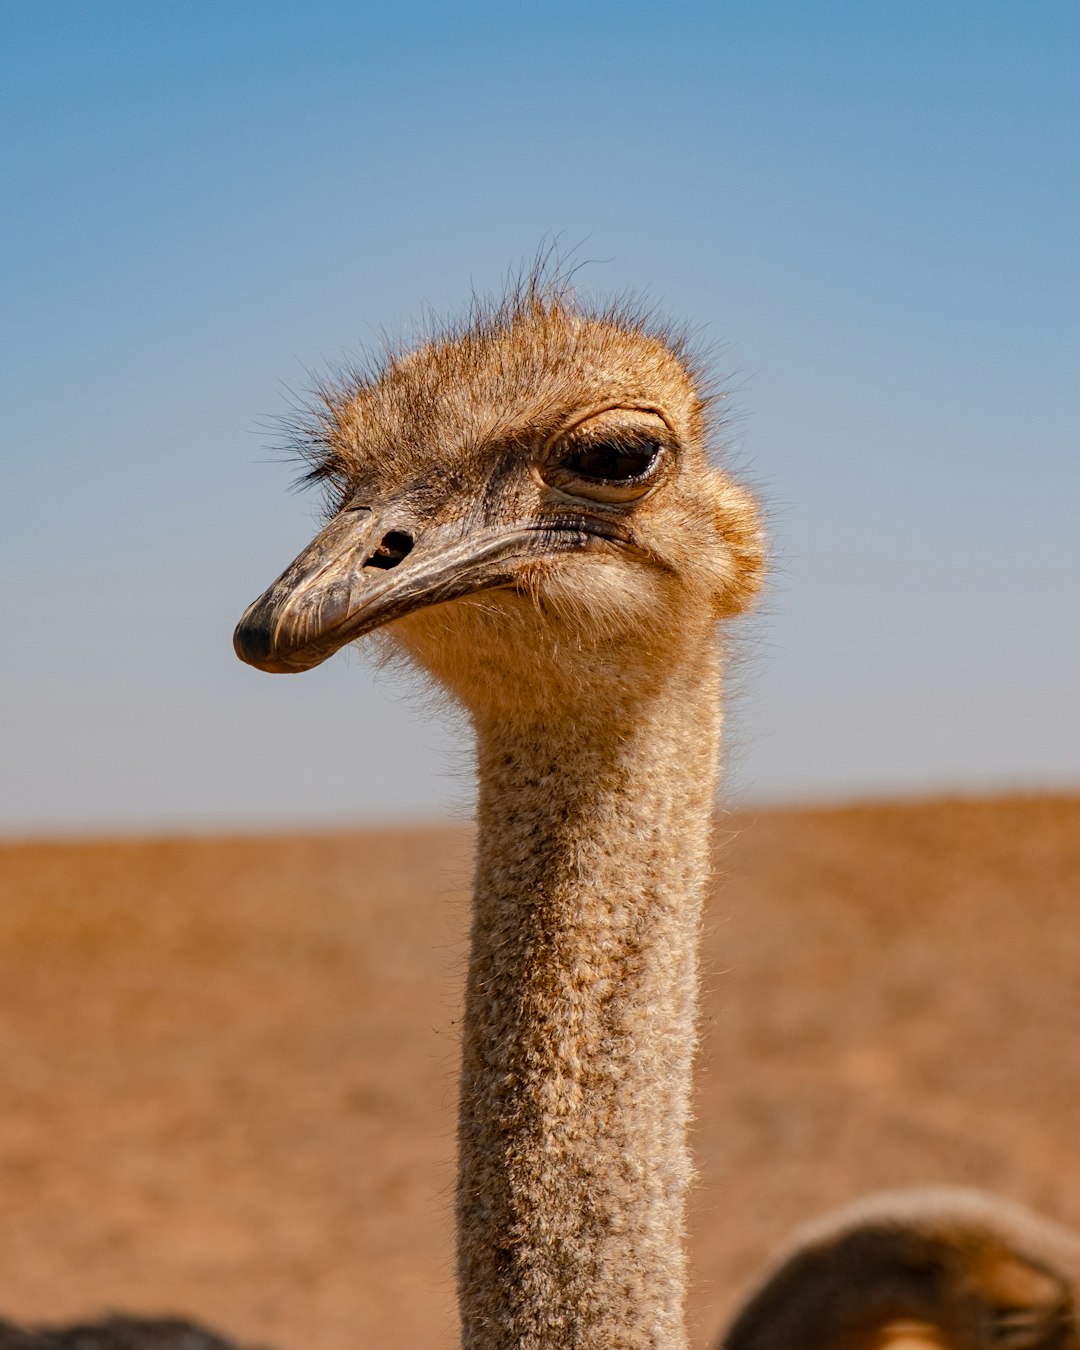  ostrich head under blue sky during daytime ostrich